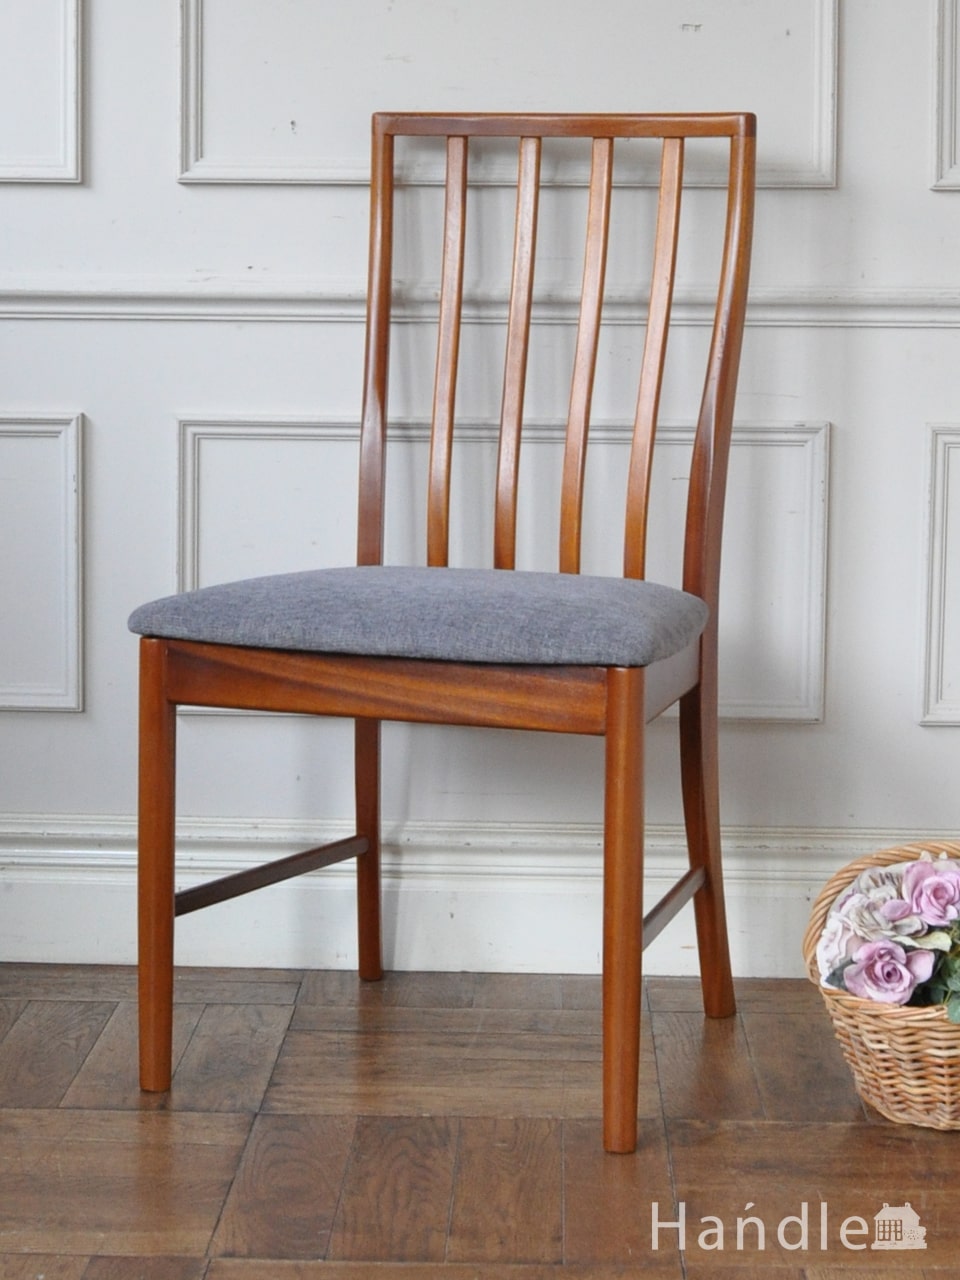 マッキントッシュのおしゃれな椅子、北欧デザインのイギリスヴィンテージチェア (x-527-c)